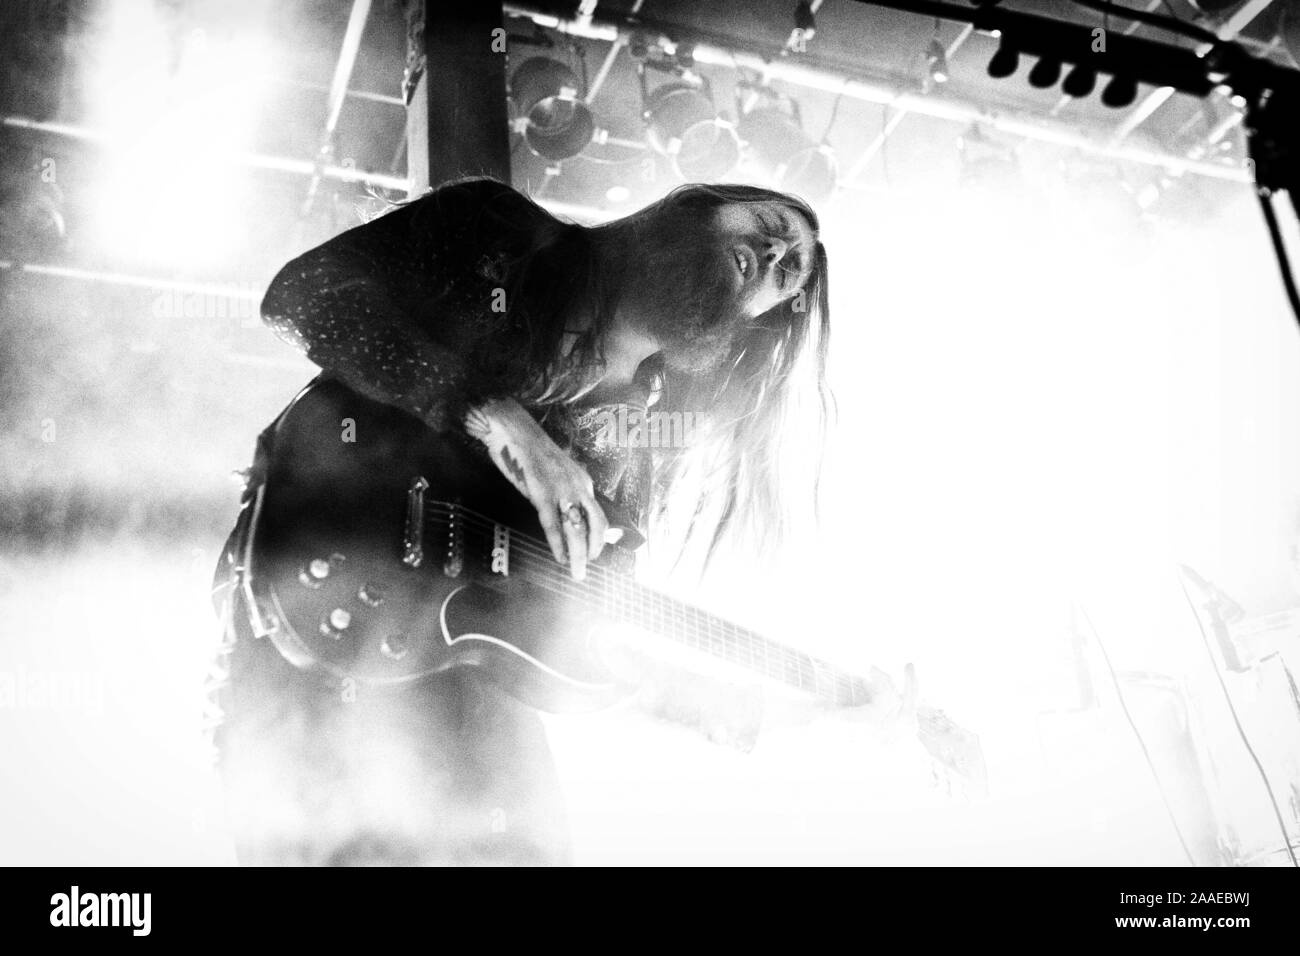 Oslo, Norvegia. 07th, novembre 2019. Il tedesco della rock band Kadavar esegue un concerto dal vivo al Blå in Oslo. Qui il chitarrista Christoph Lindemann è visto dal vivo sul palco. (Photo credit: Gonzales foto - Terje Dokken). Foto Stock